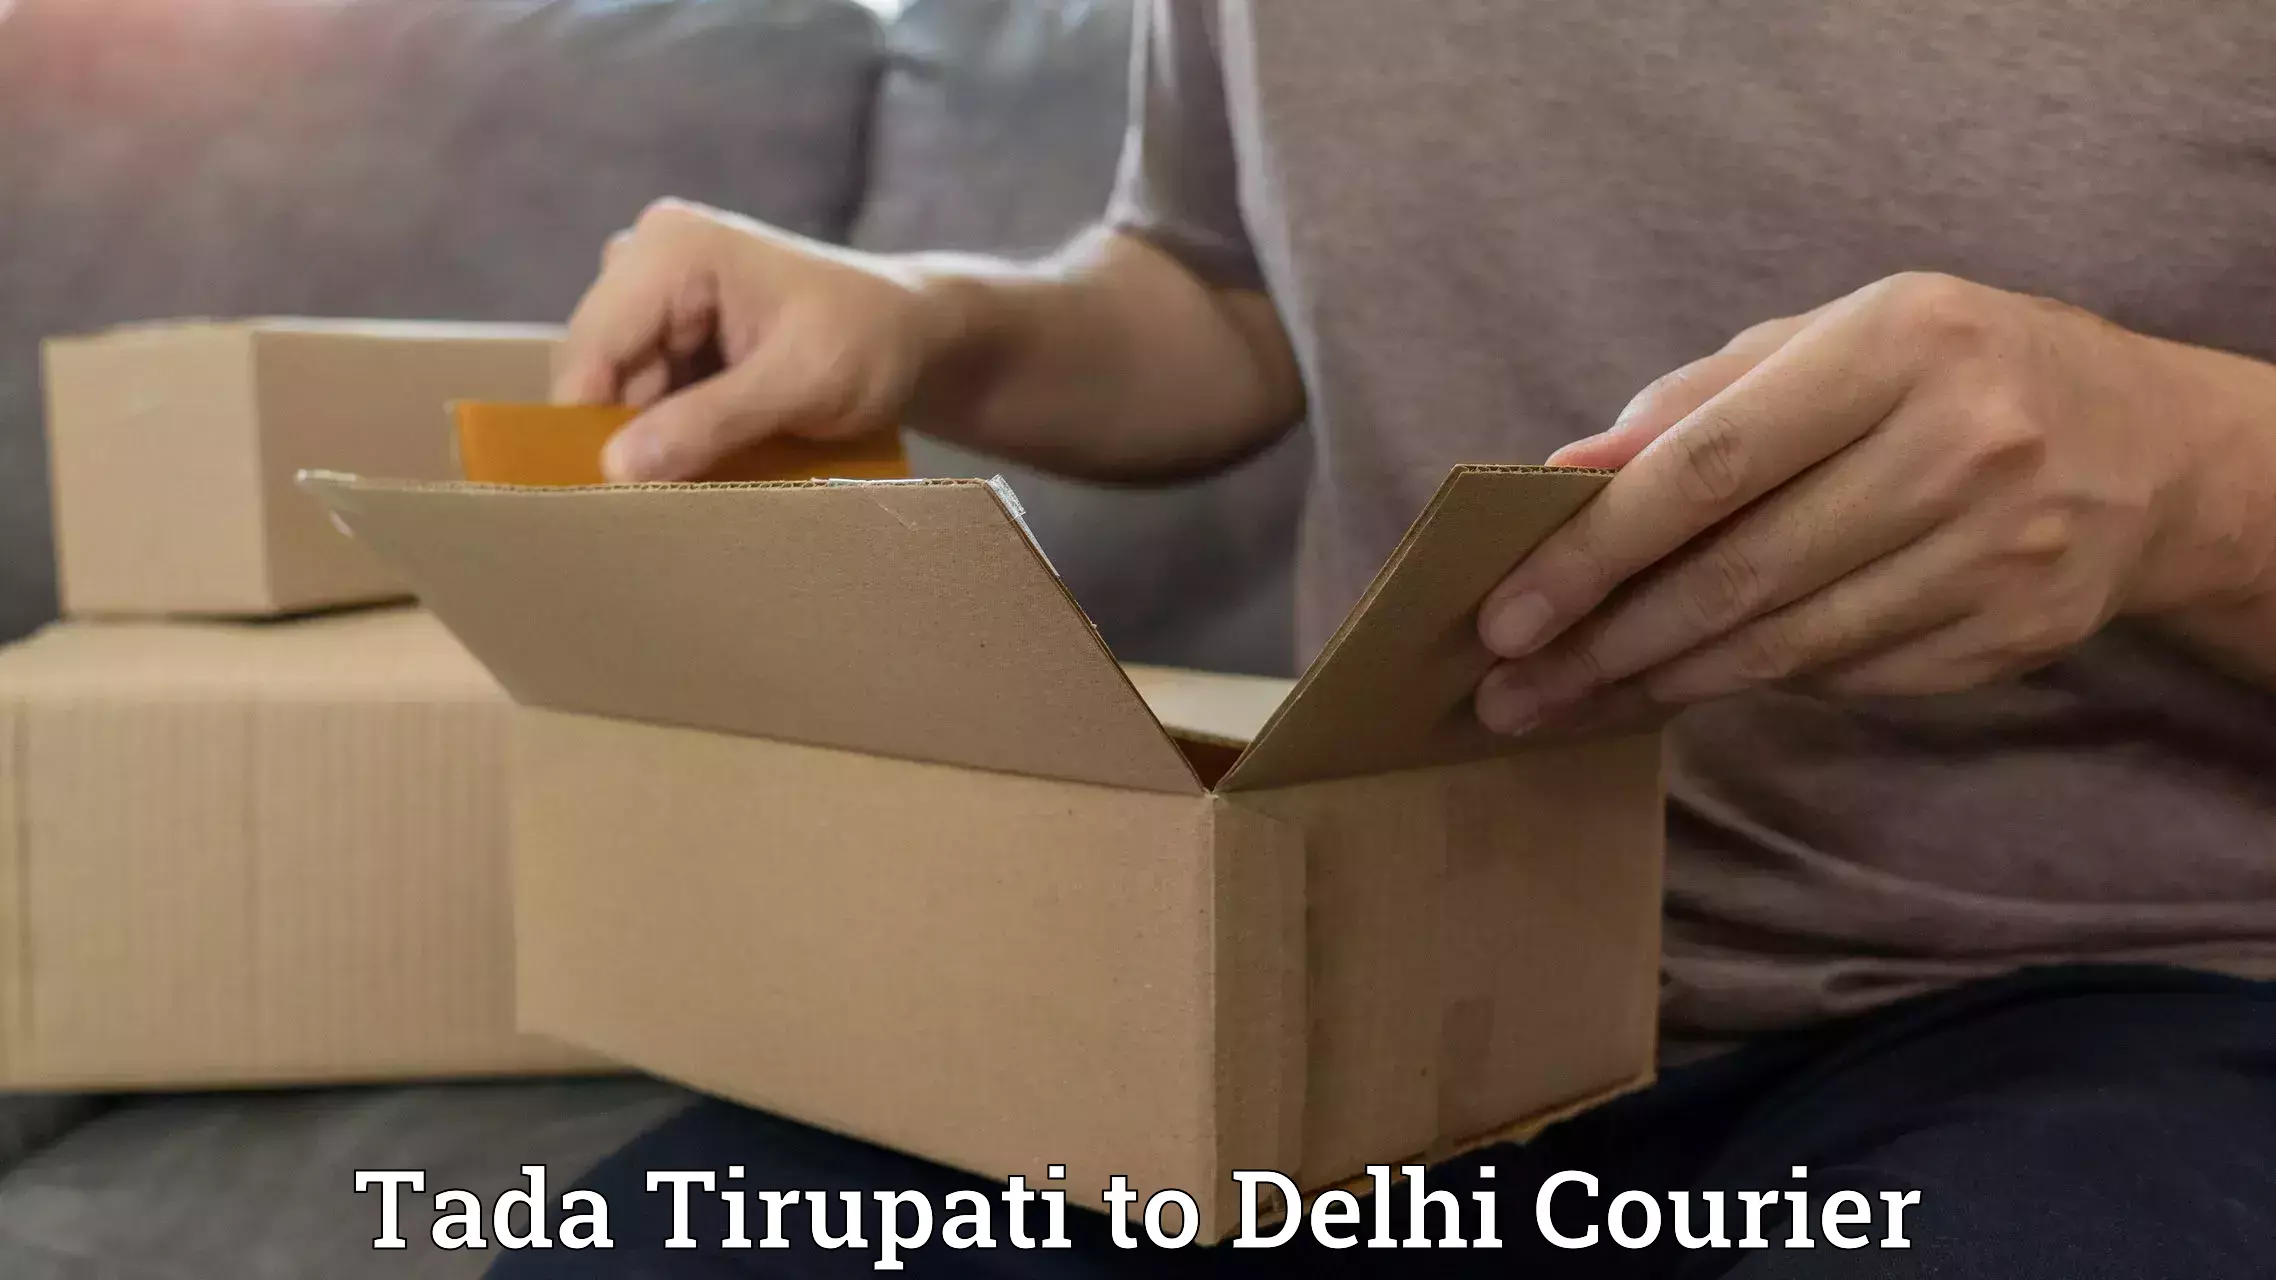 Innovative courier solutions Tada Tirupati to Kalkaji